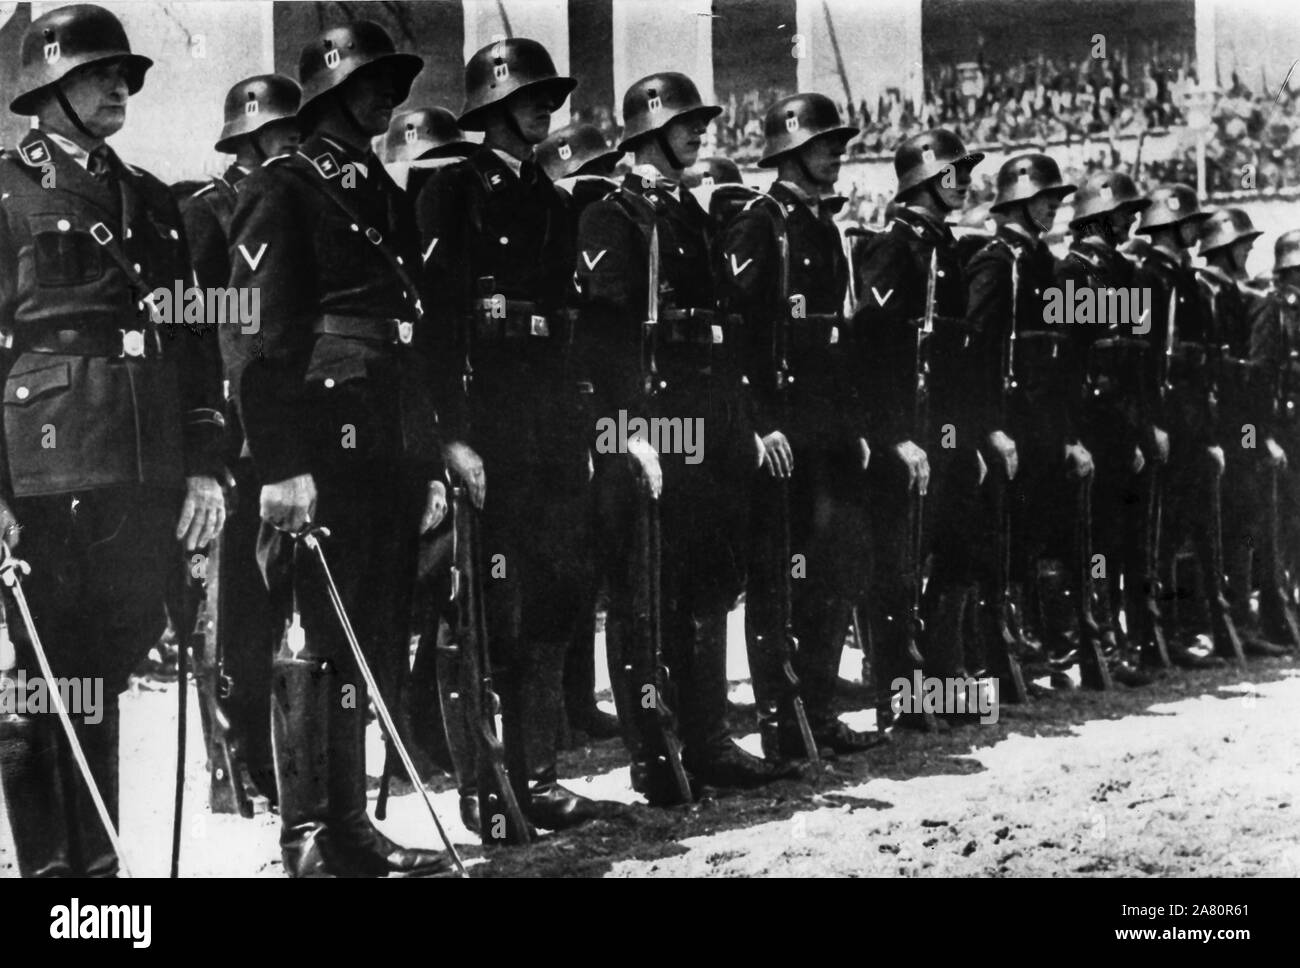 SS parade, Germany, 1936 Stock Photo - Alamy